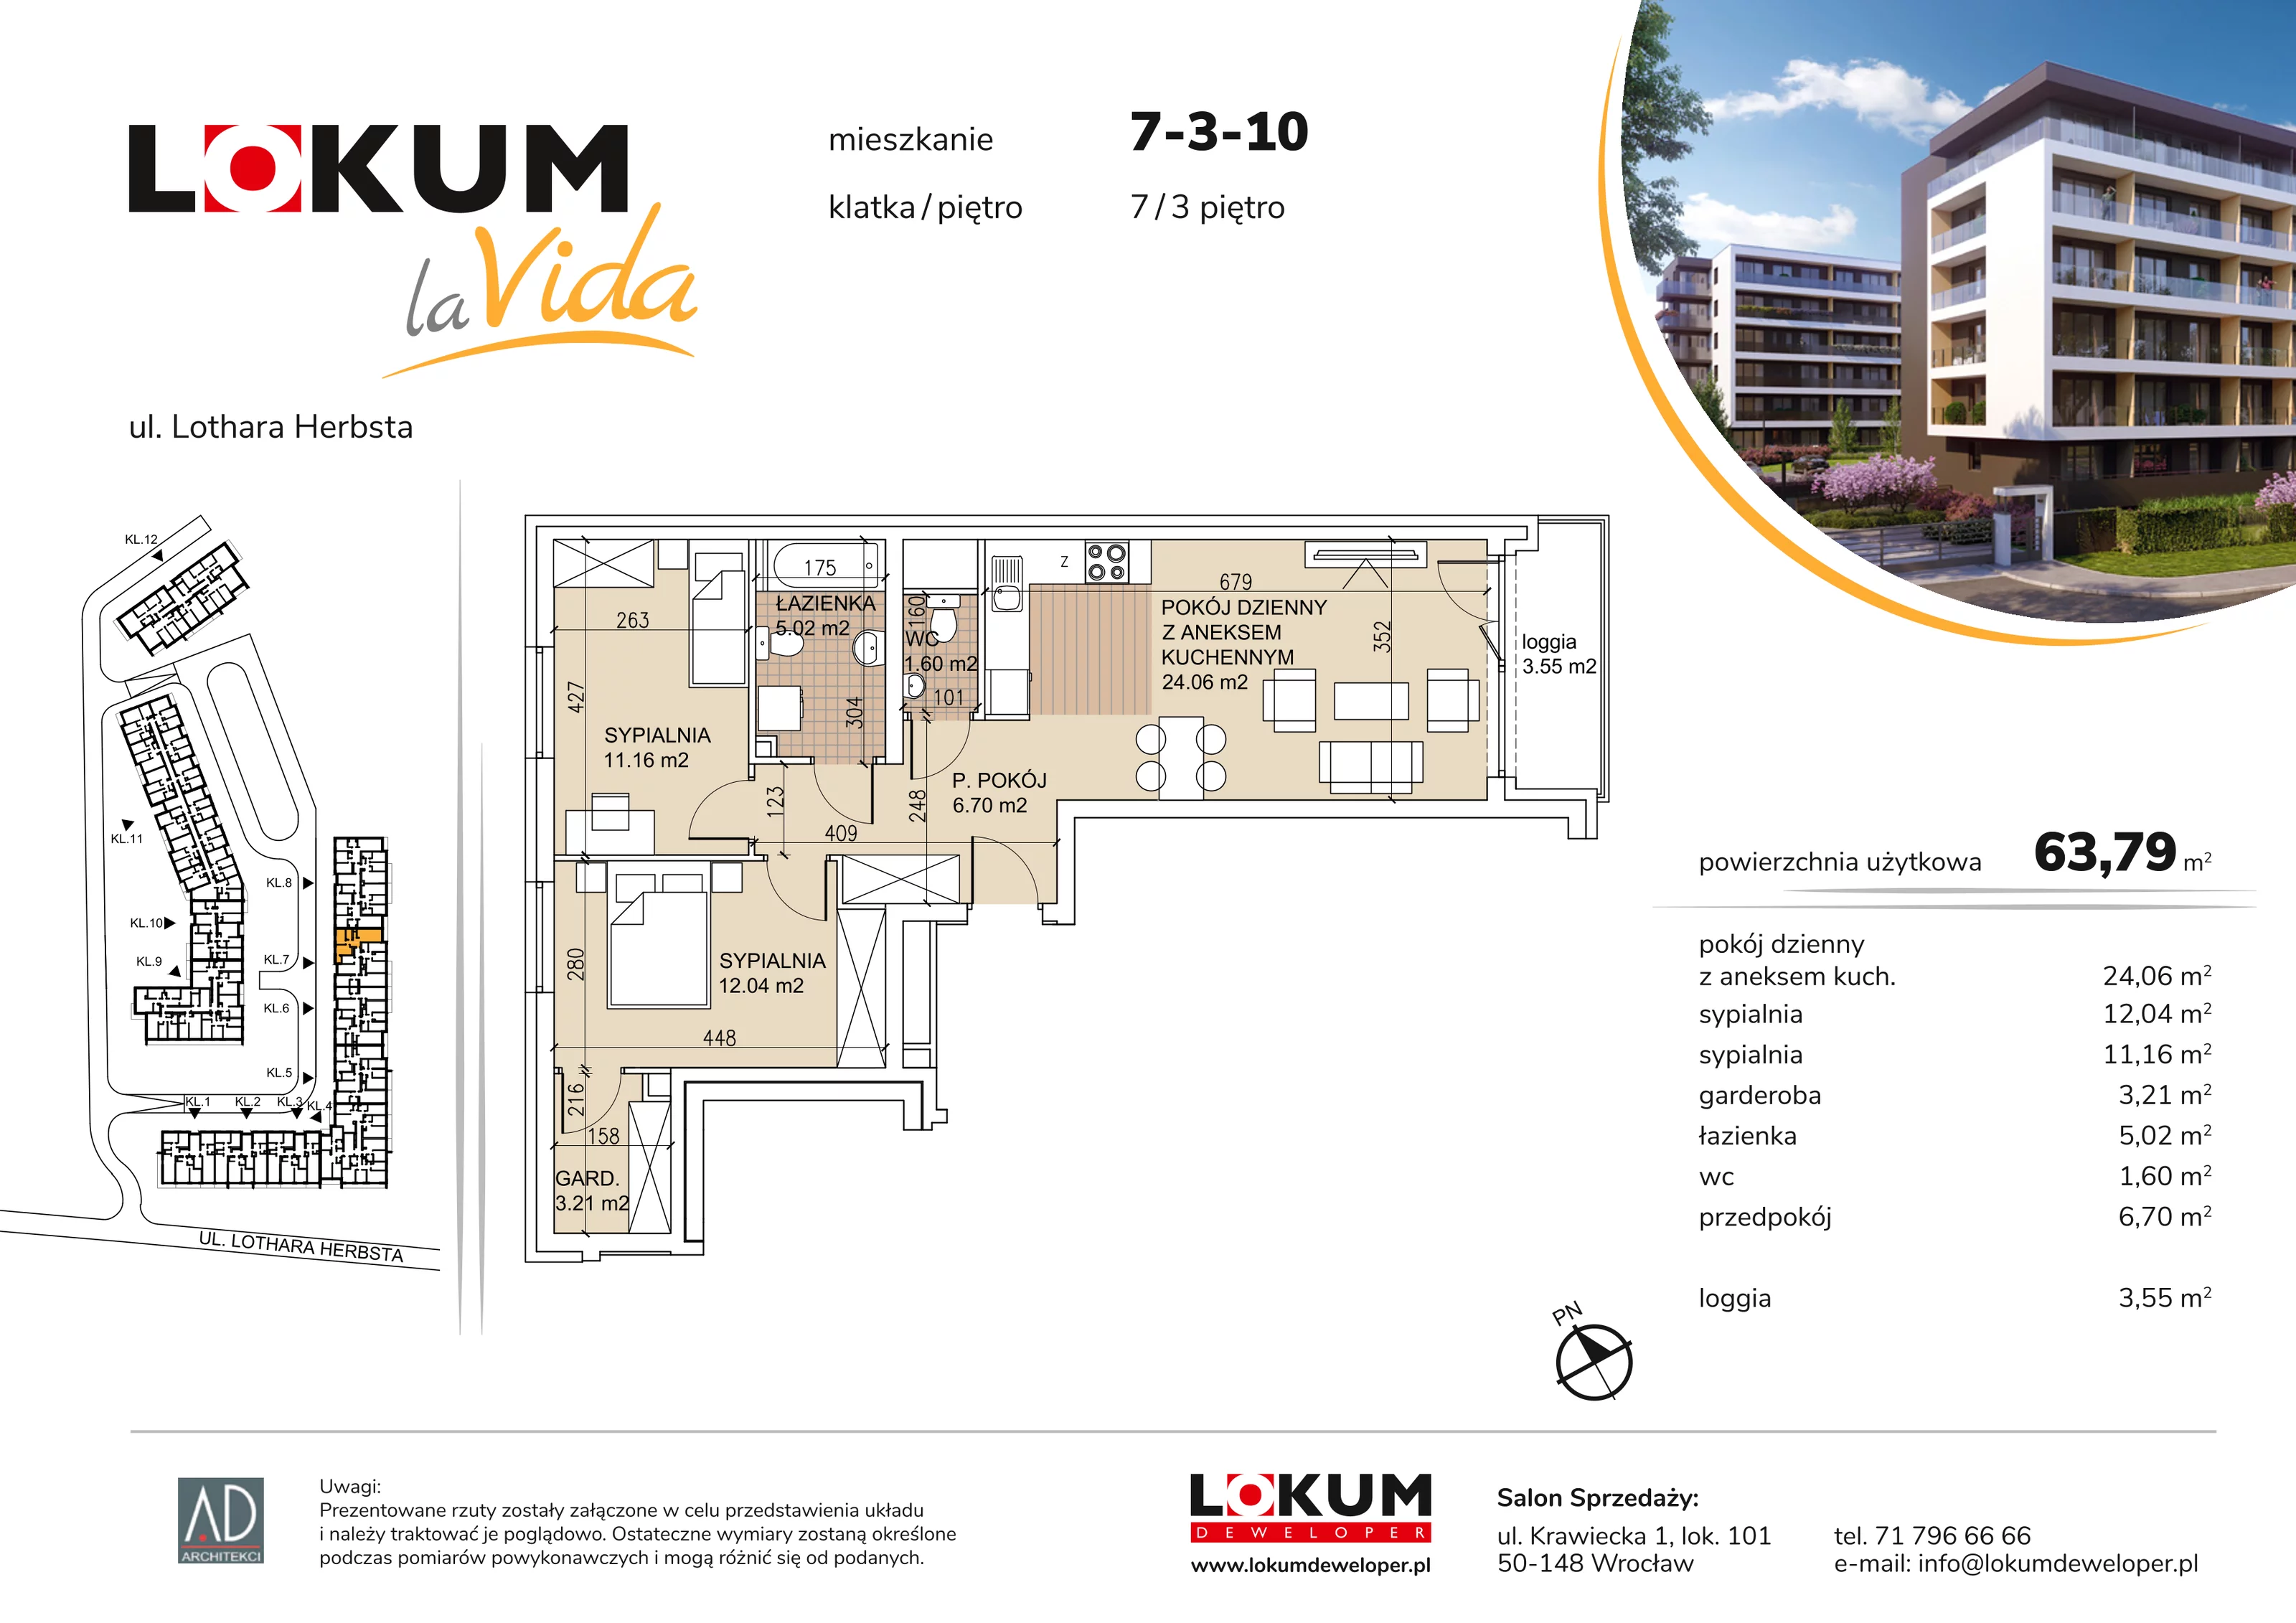 Mieszkanie 63,79 m², piętro 3, oferta nr 7-3-10, Lokum la Vida, Wrocław, Sołtysowice, ul. Lothara Herbsta